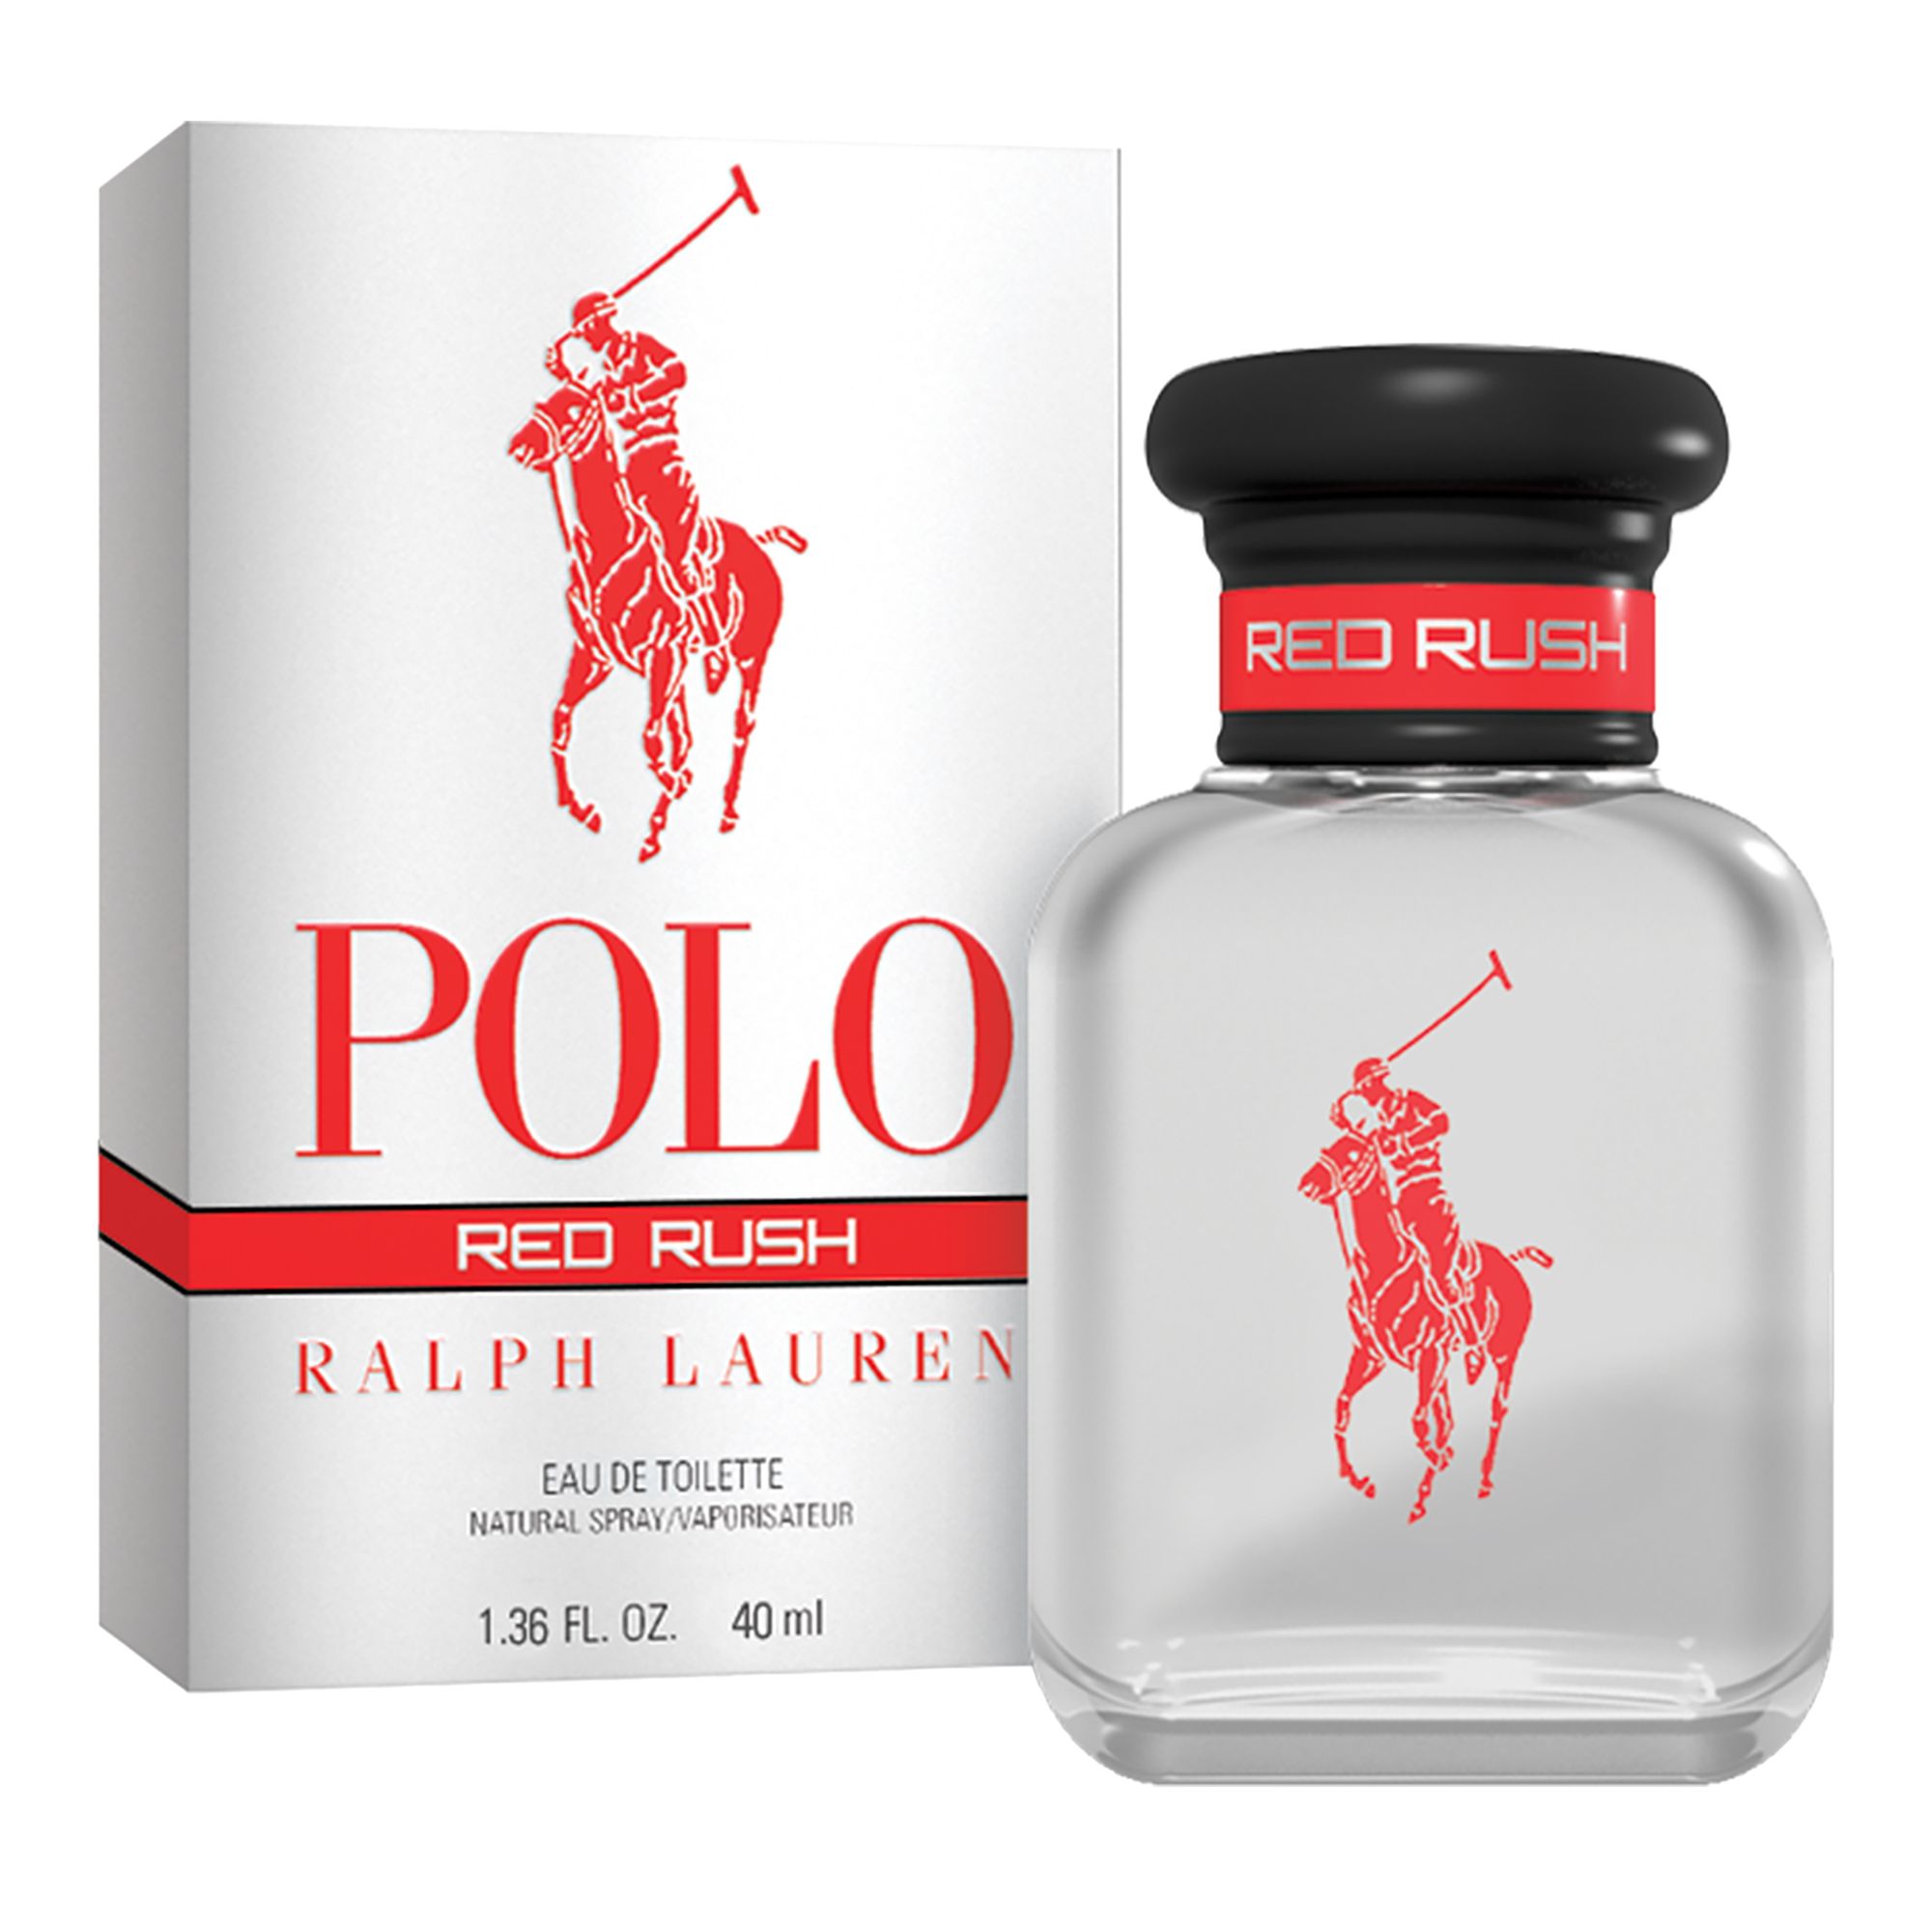 Polo perfume for men